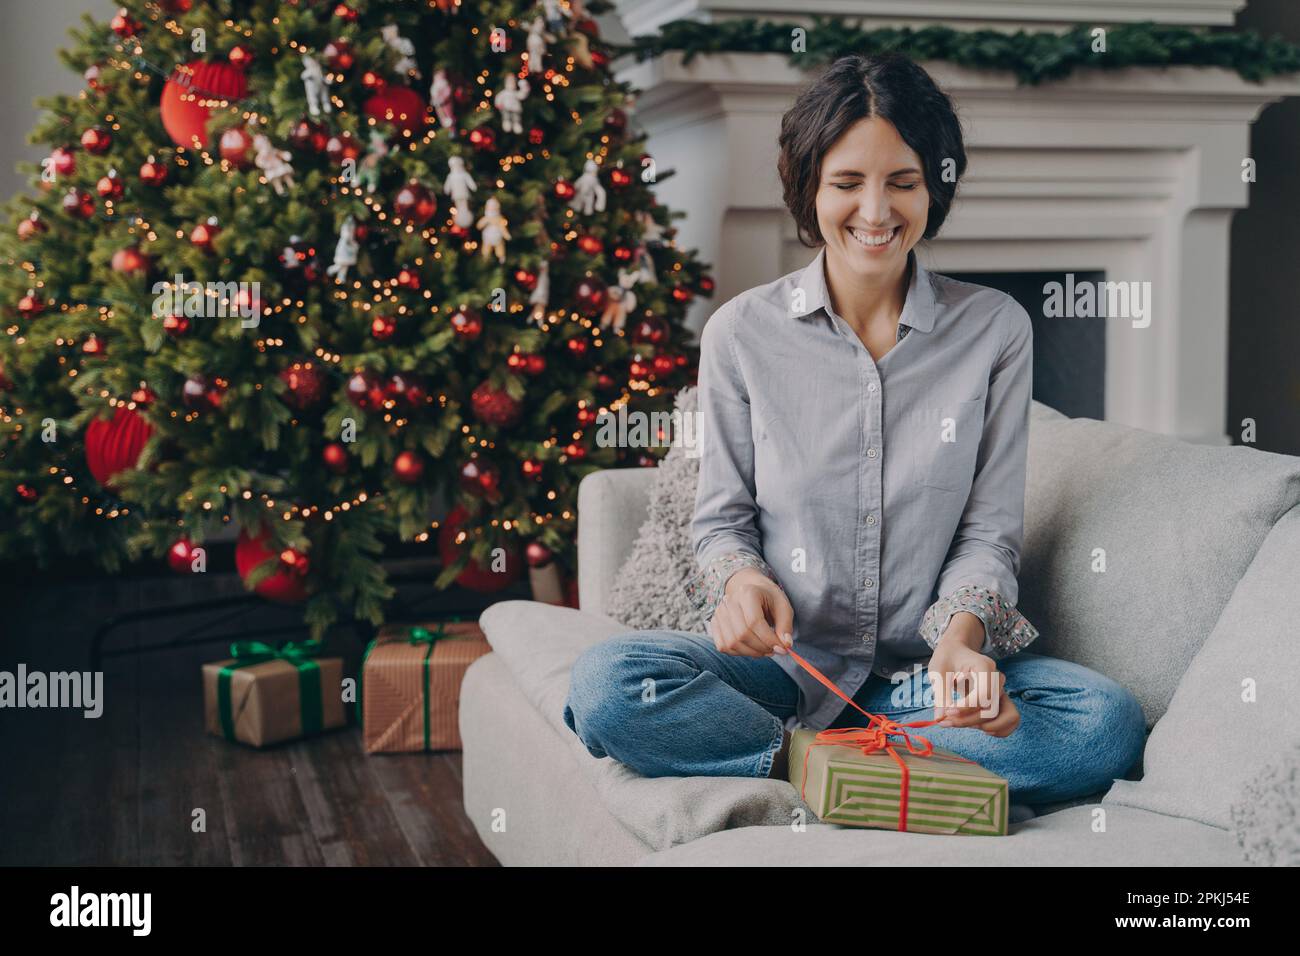 Eine junge, aufgeregte Italienerin lächelt verspielt mit geschlossenen Augen und versucht, ein Weihnachtsgeschenk auszupacken, indem sie das Band mit den Fingern hält, während sie auf dem bequemen Sofa sitzt Stockfoto